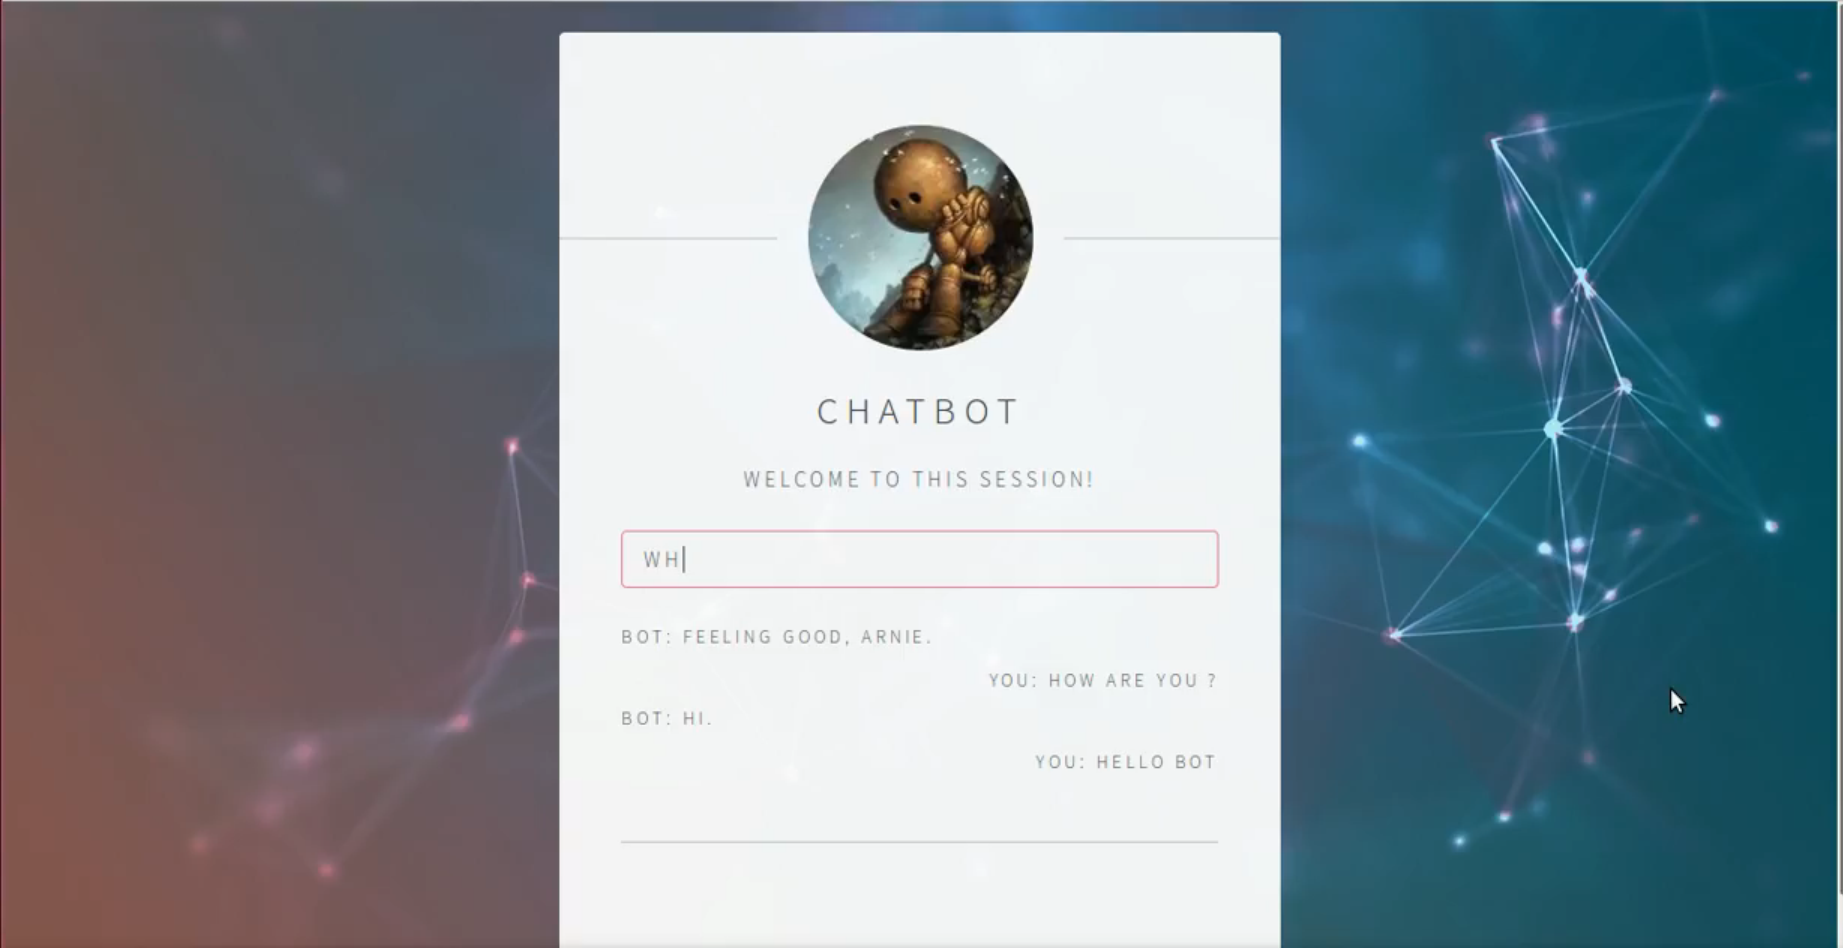 Chatbot web interface